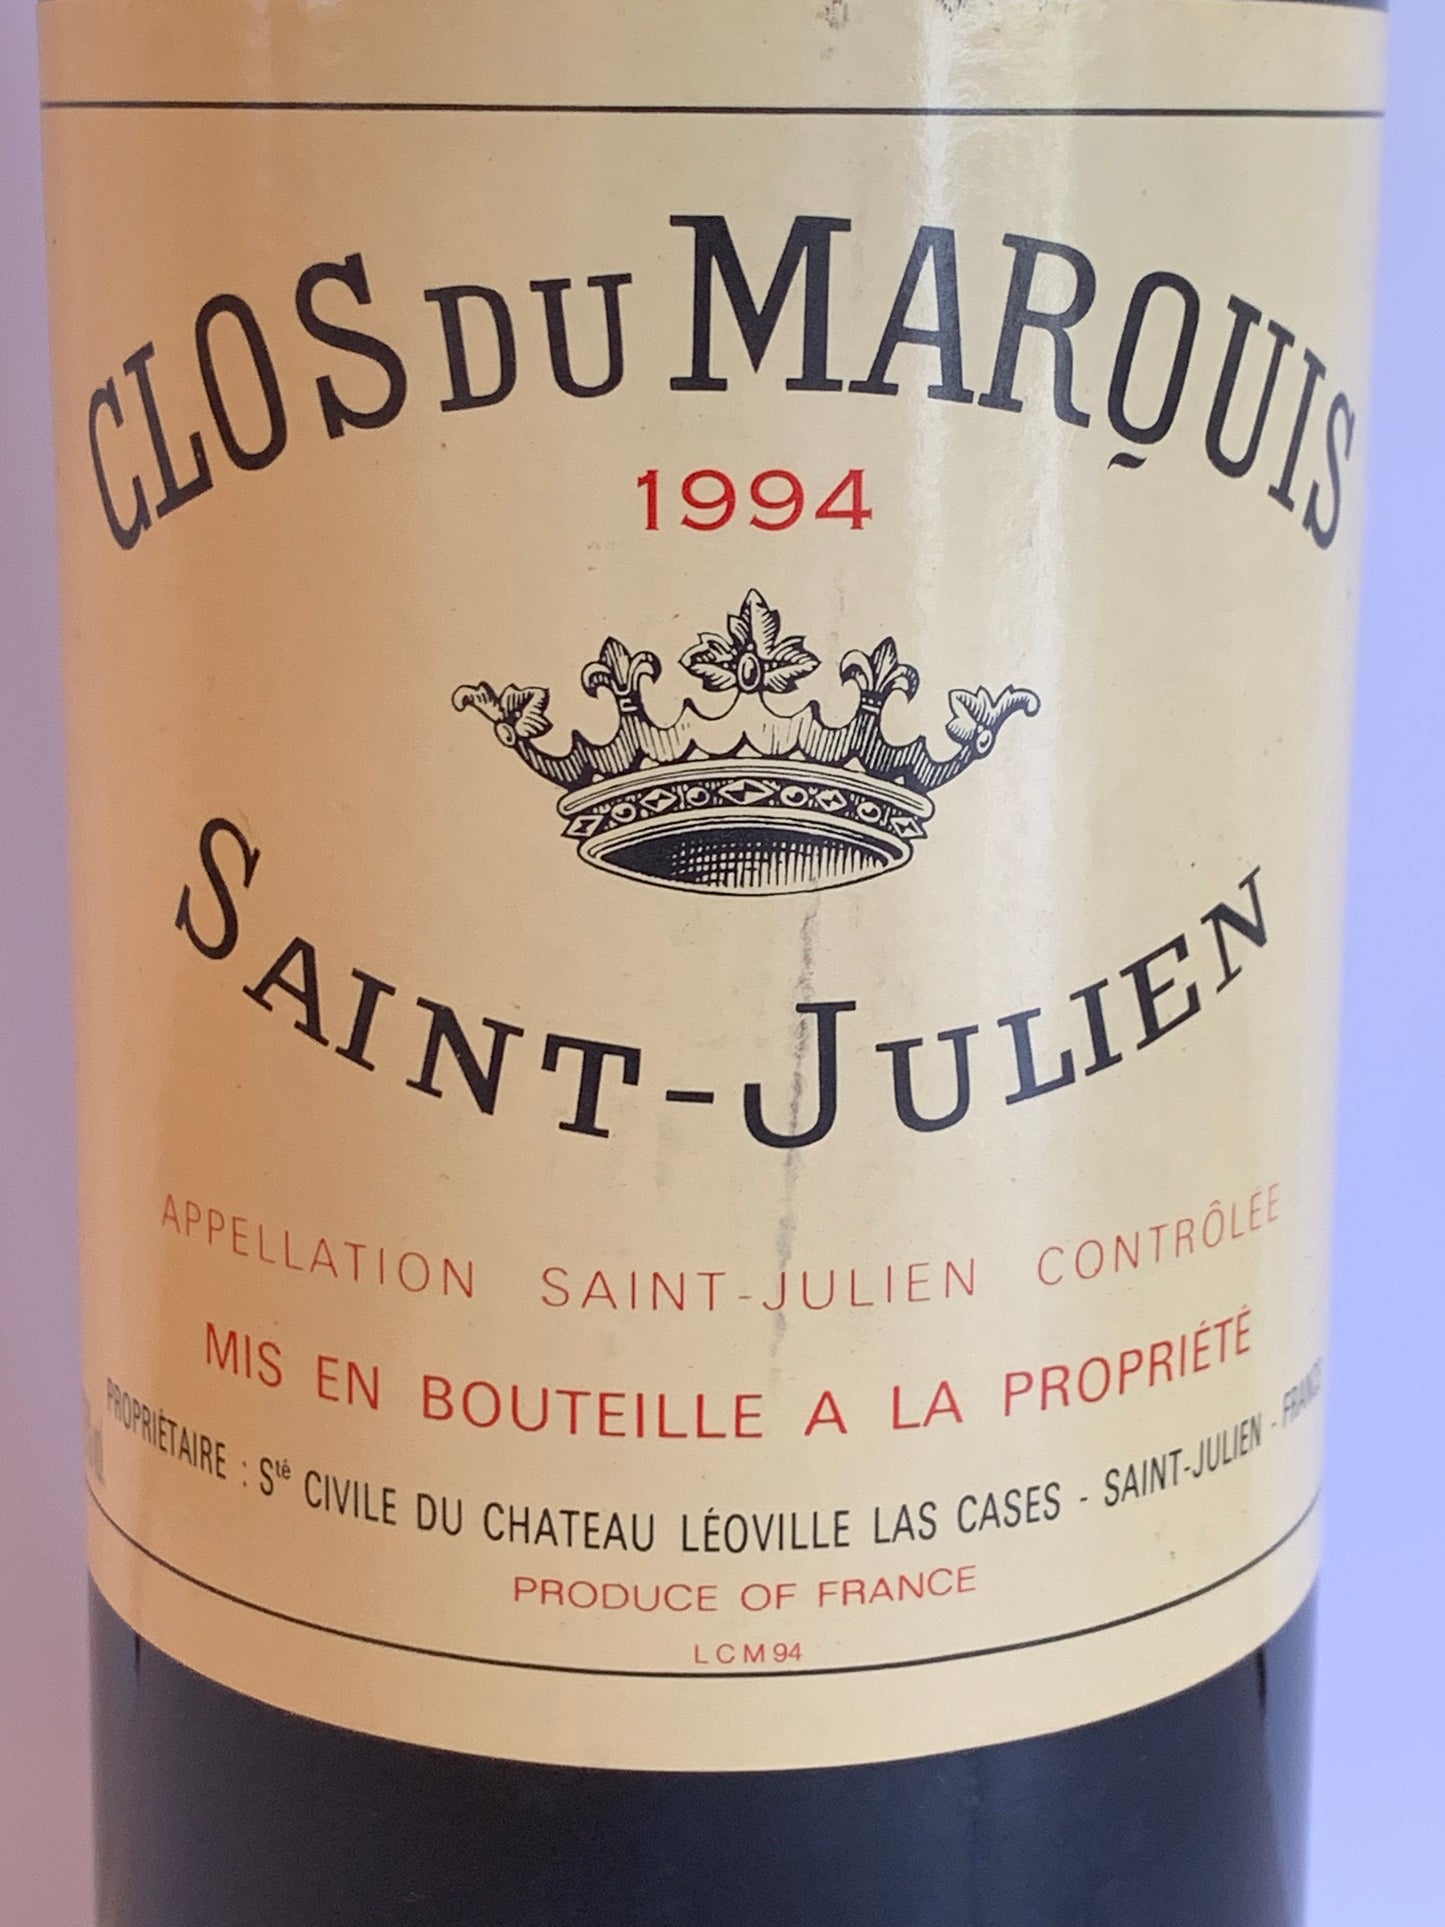 Clos du Marquis, Saint-Julien, 1994